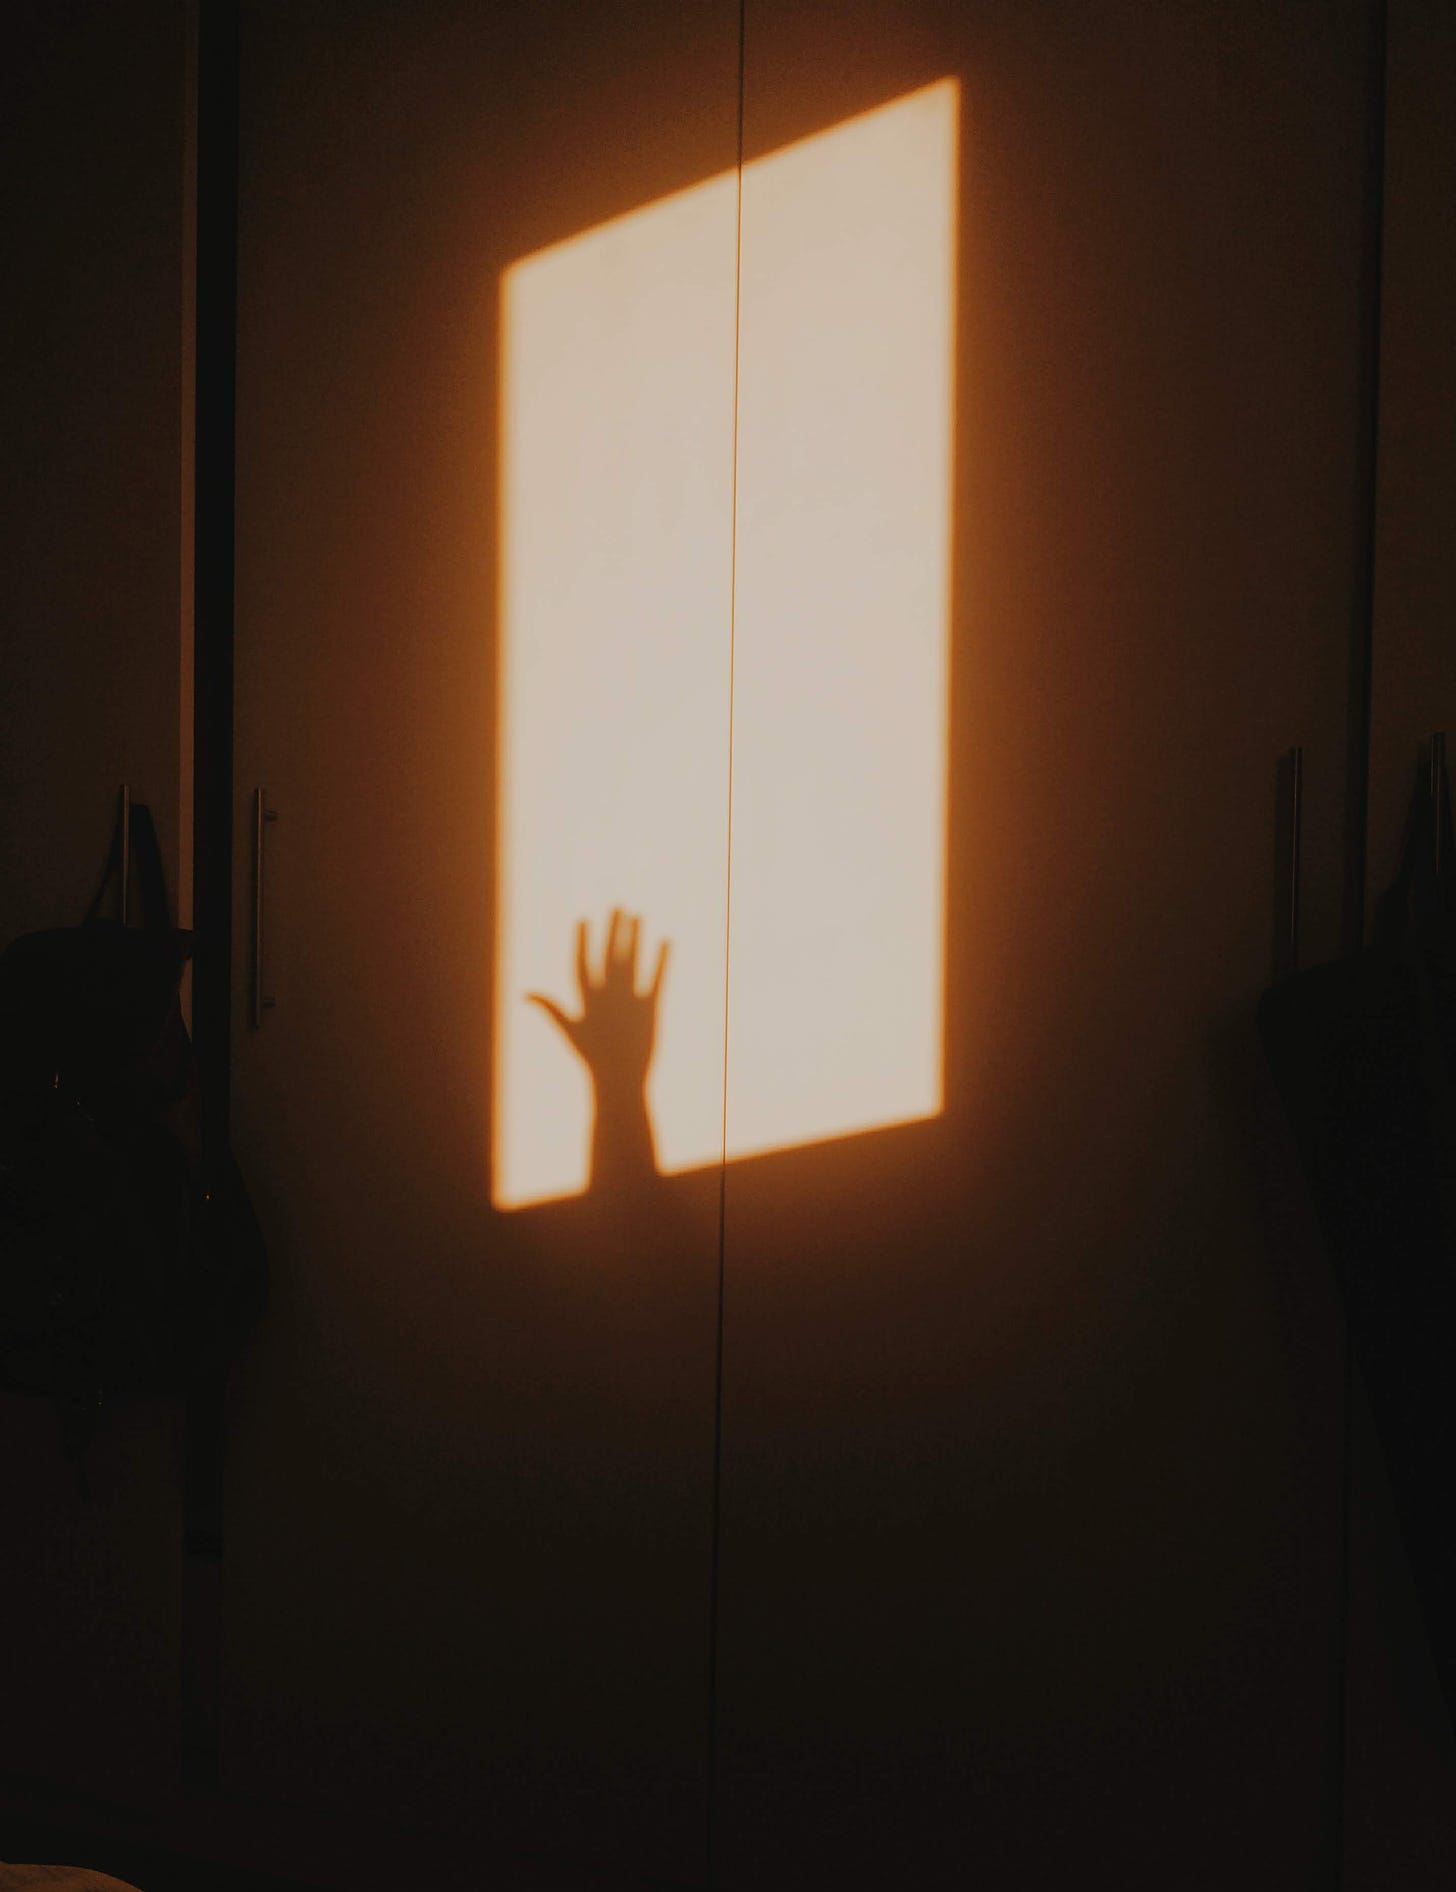 Foto da sombra de uma mão na porta do armário. A luz que ilumina a cena é a do amanhecer, deixando todo o ambiente amarelado.